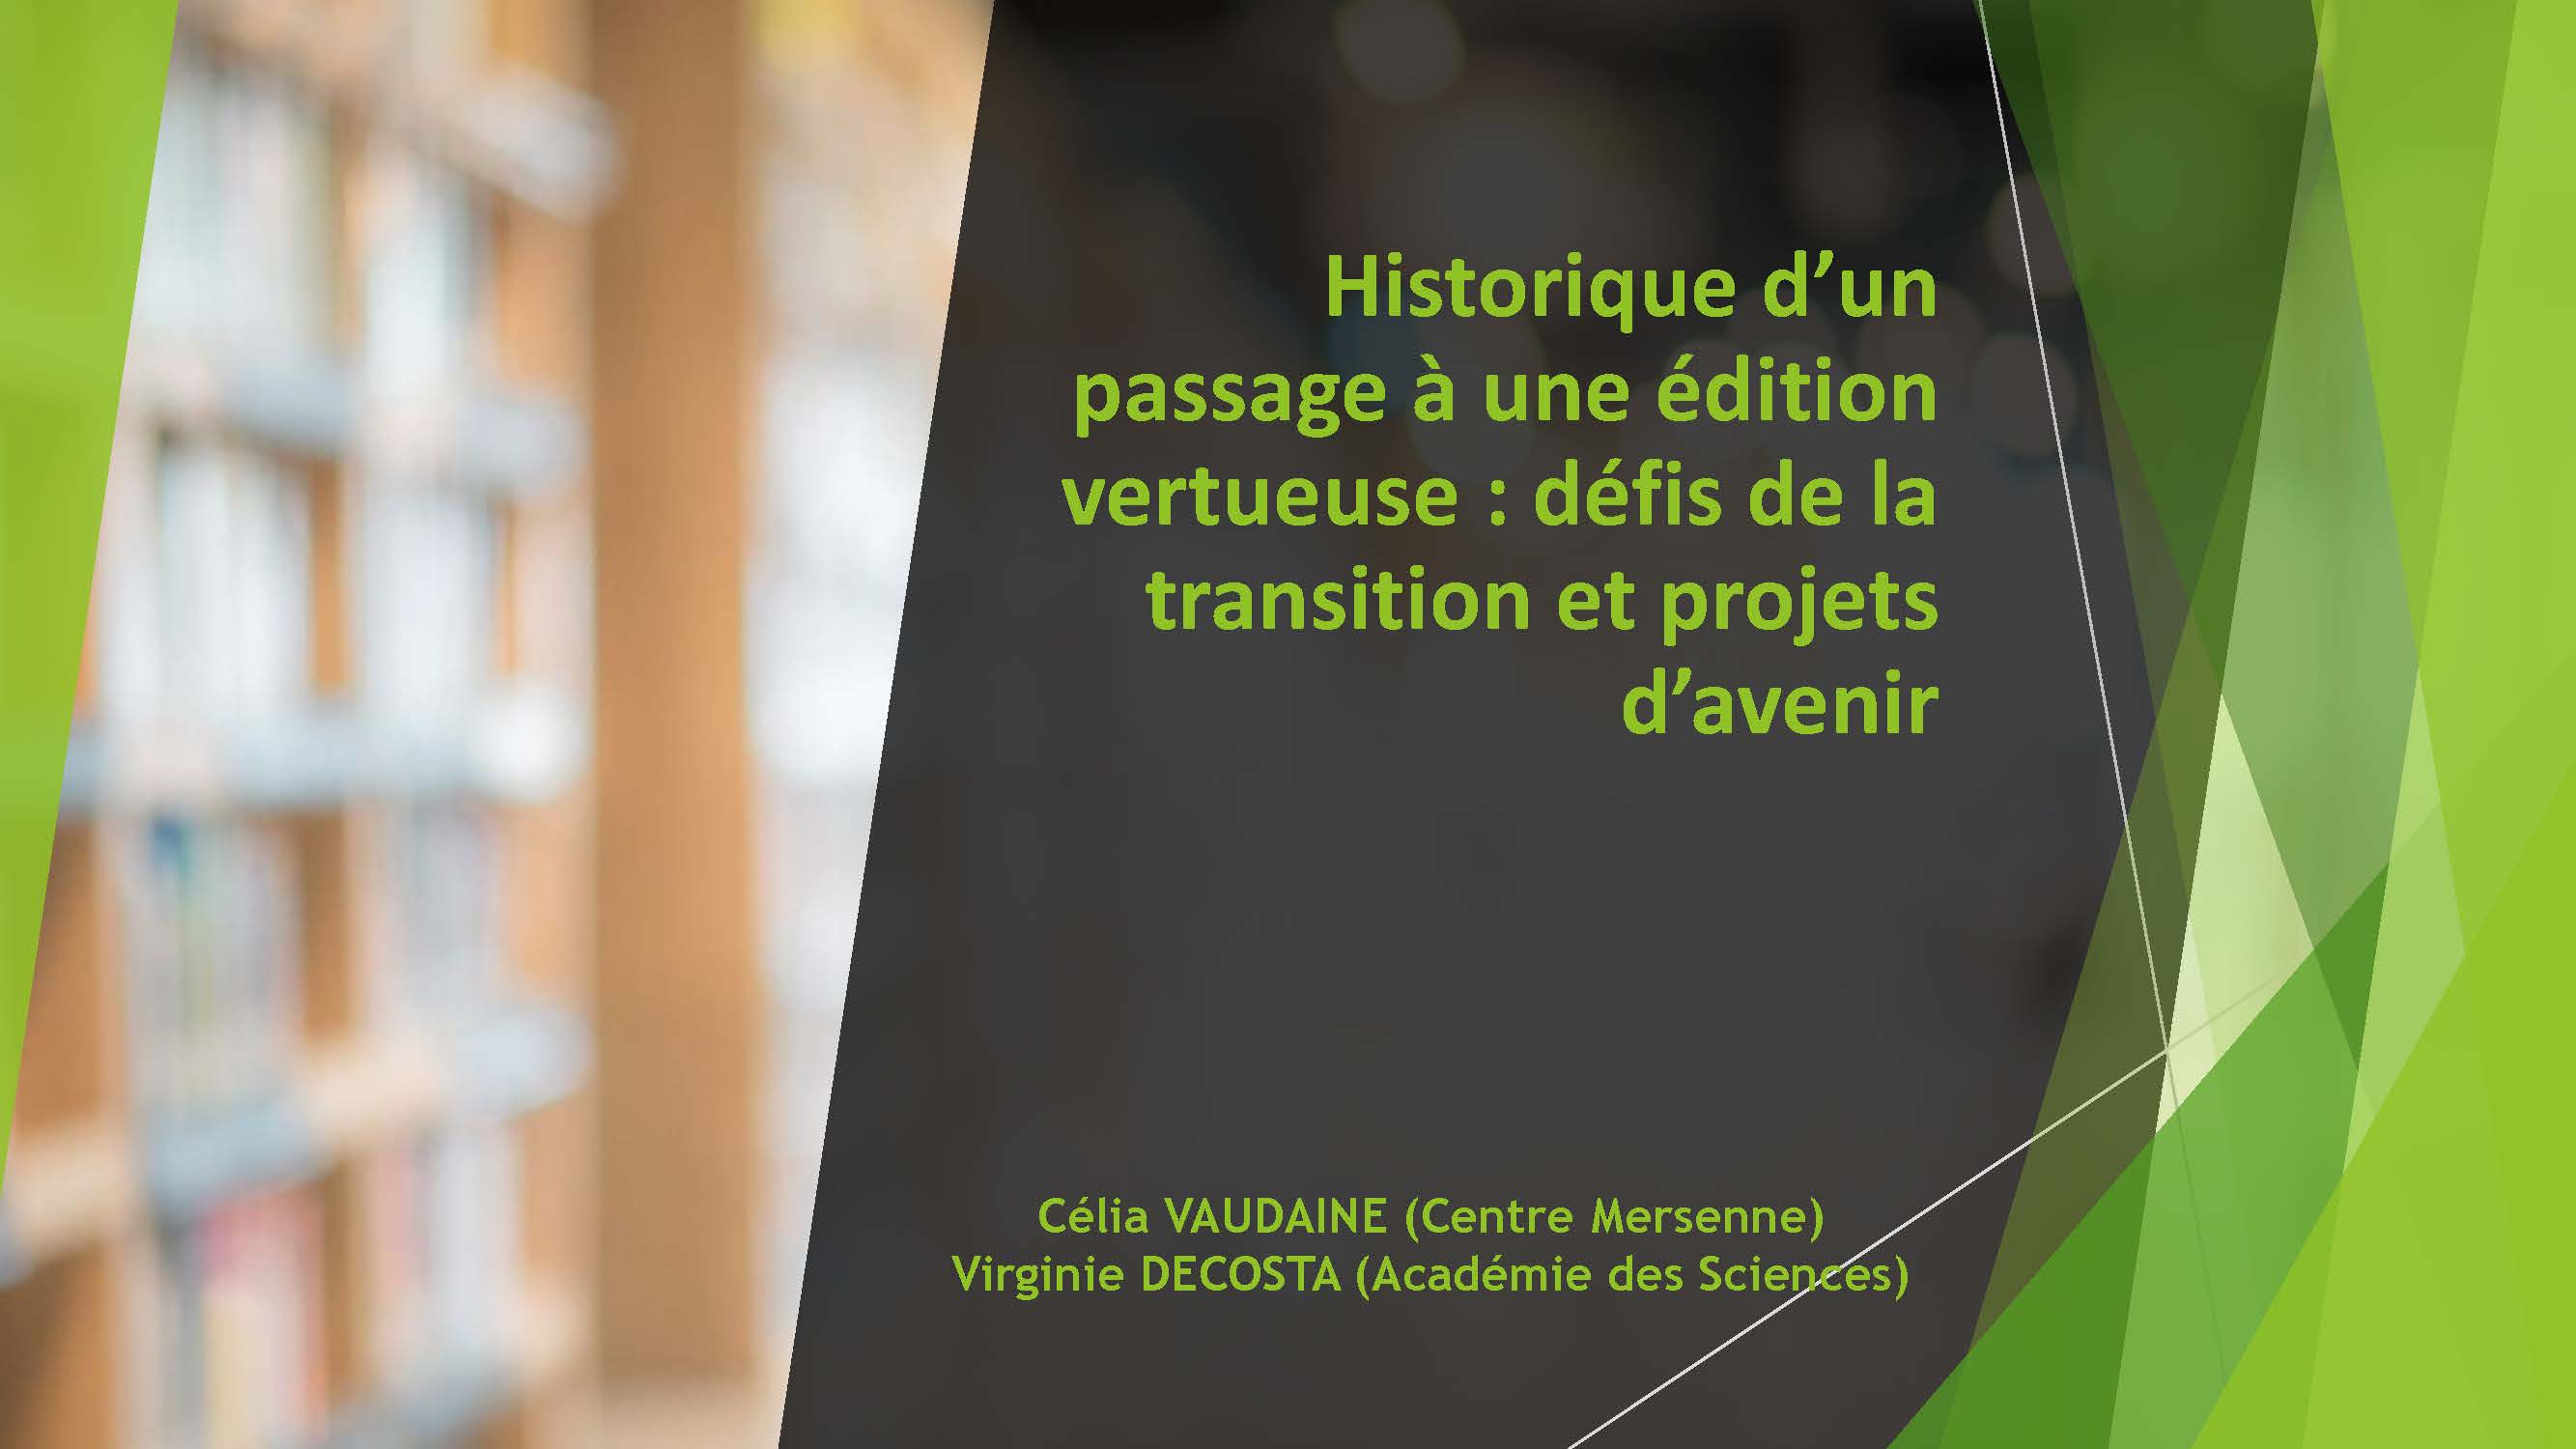 Atelier Dialogu'IST 11 - Historique d’un passage à une édition vertueuse : défis de la transition et projets d’avenir par Virginie DECOSTA et Célia VAUDAINE